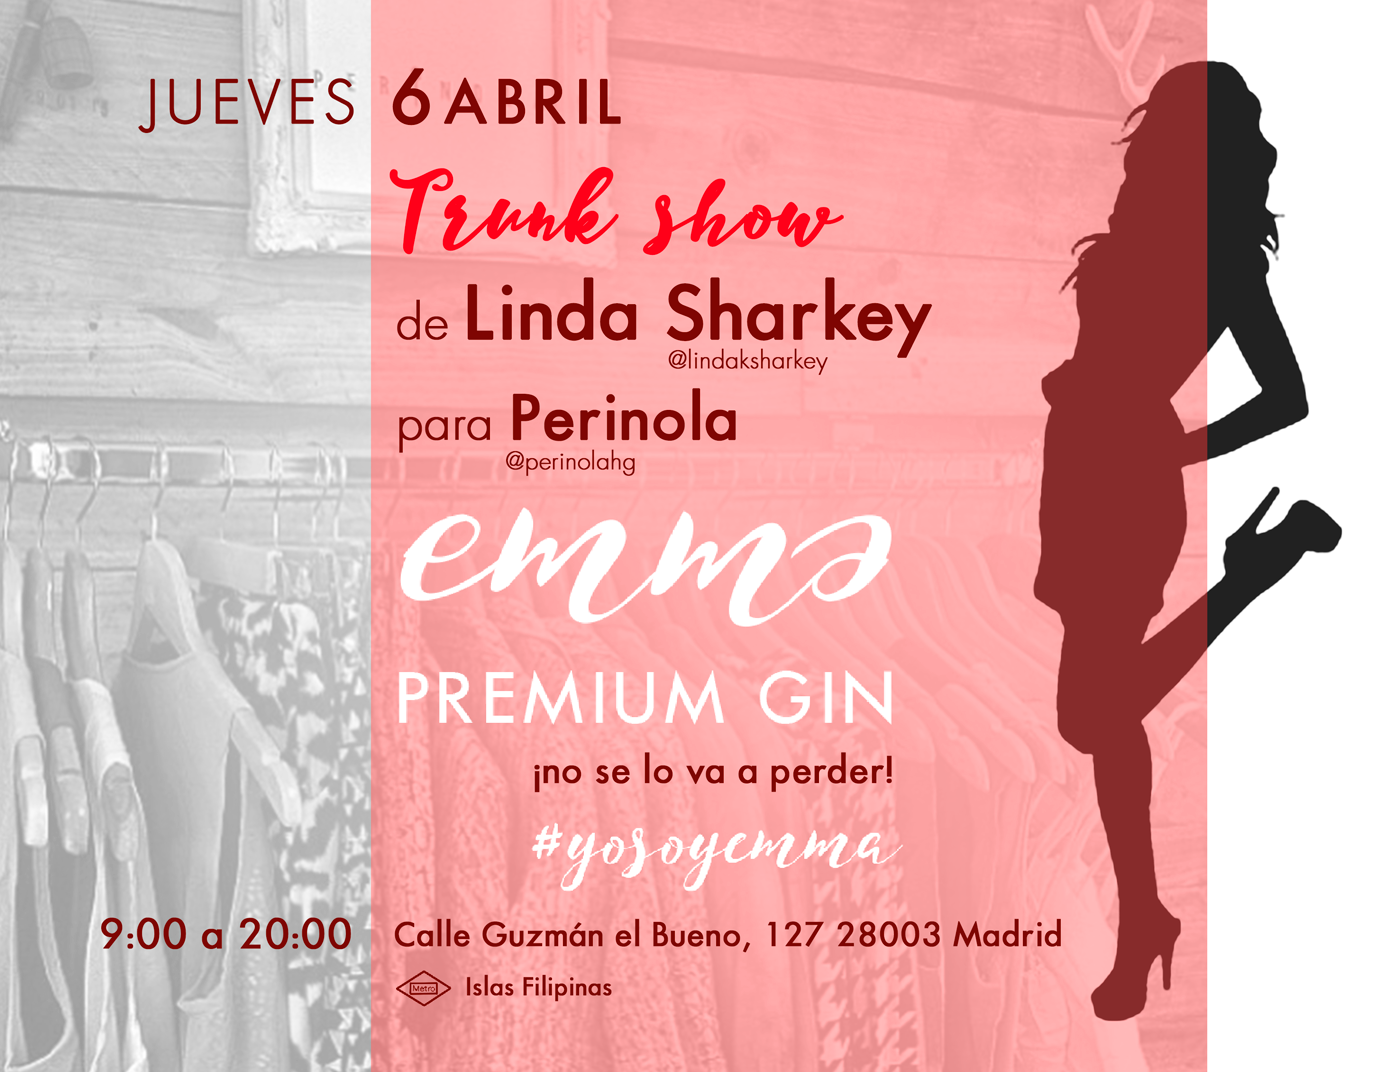 El jueves estaré en el evento de Linda Sharkey en Madrid